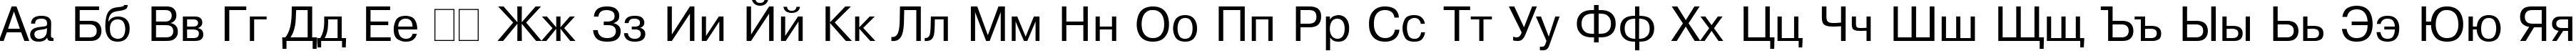 Пример написания русского алфавита шрифтом Pragmatica Plain:001.001